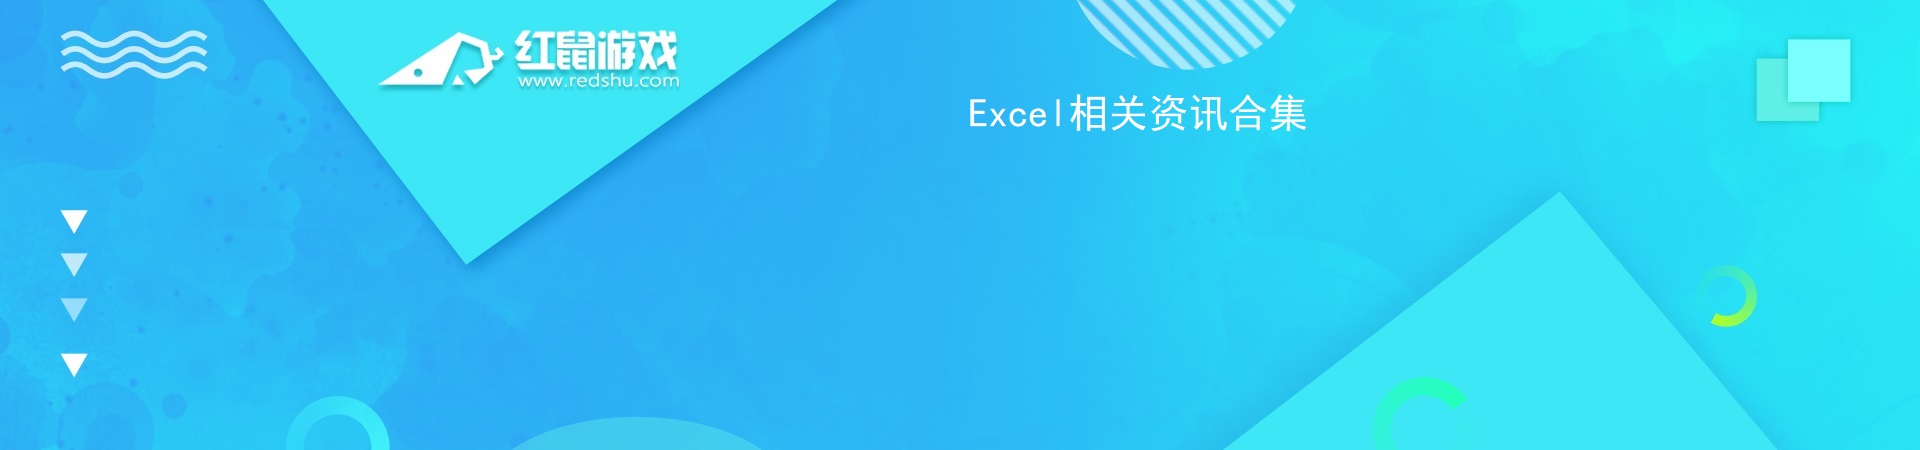 Excel相关资讯合集